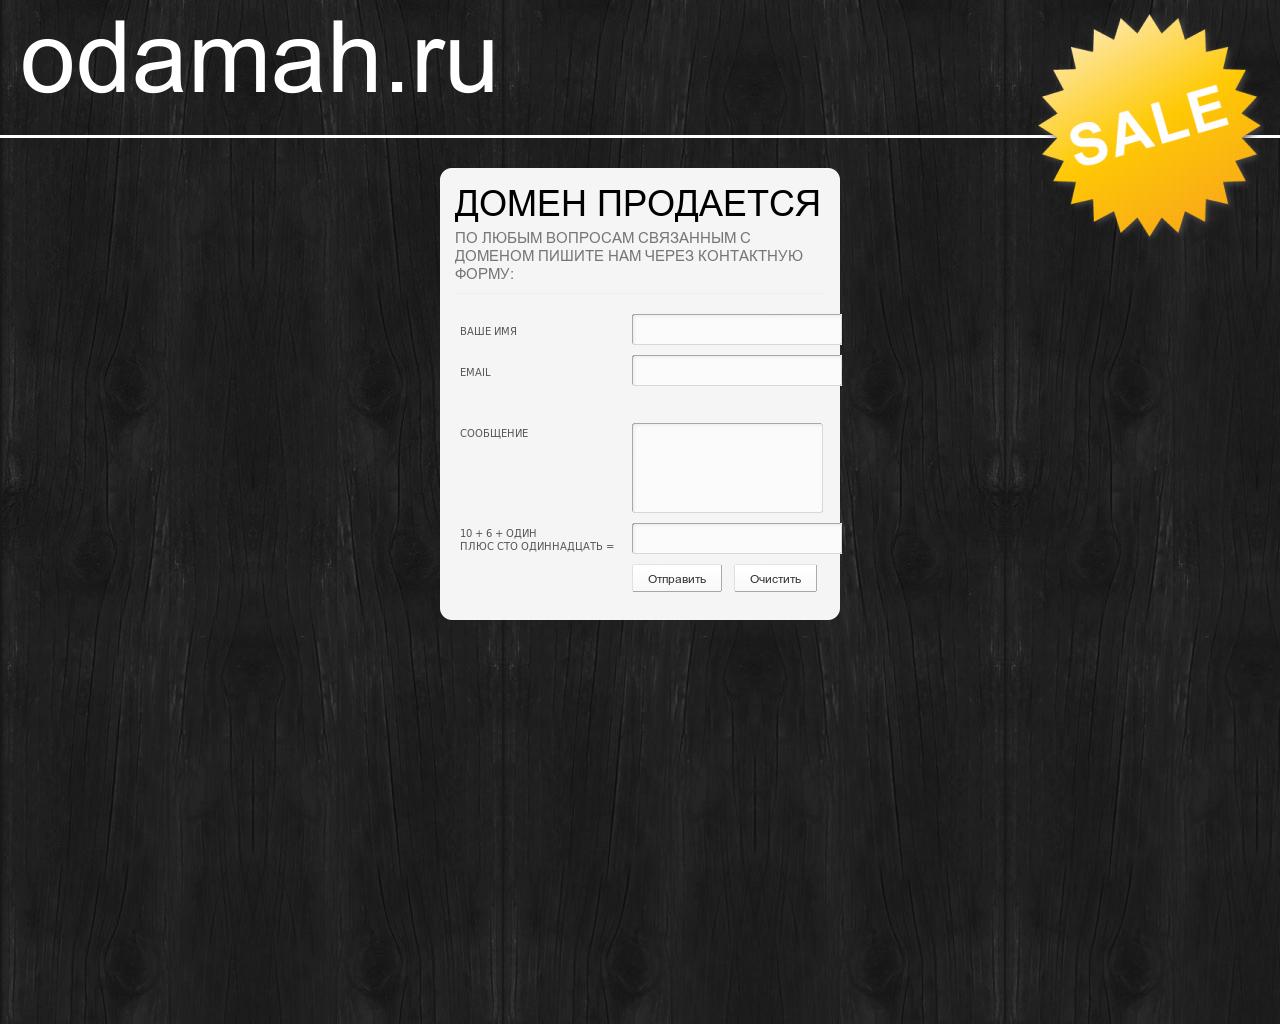 Изображение сайта odamah.ru в разрешении 1280x1024